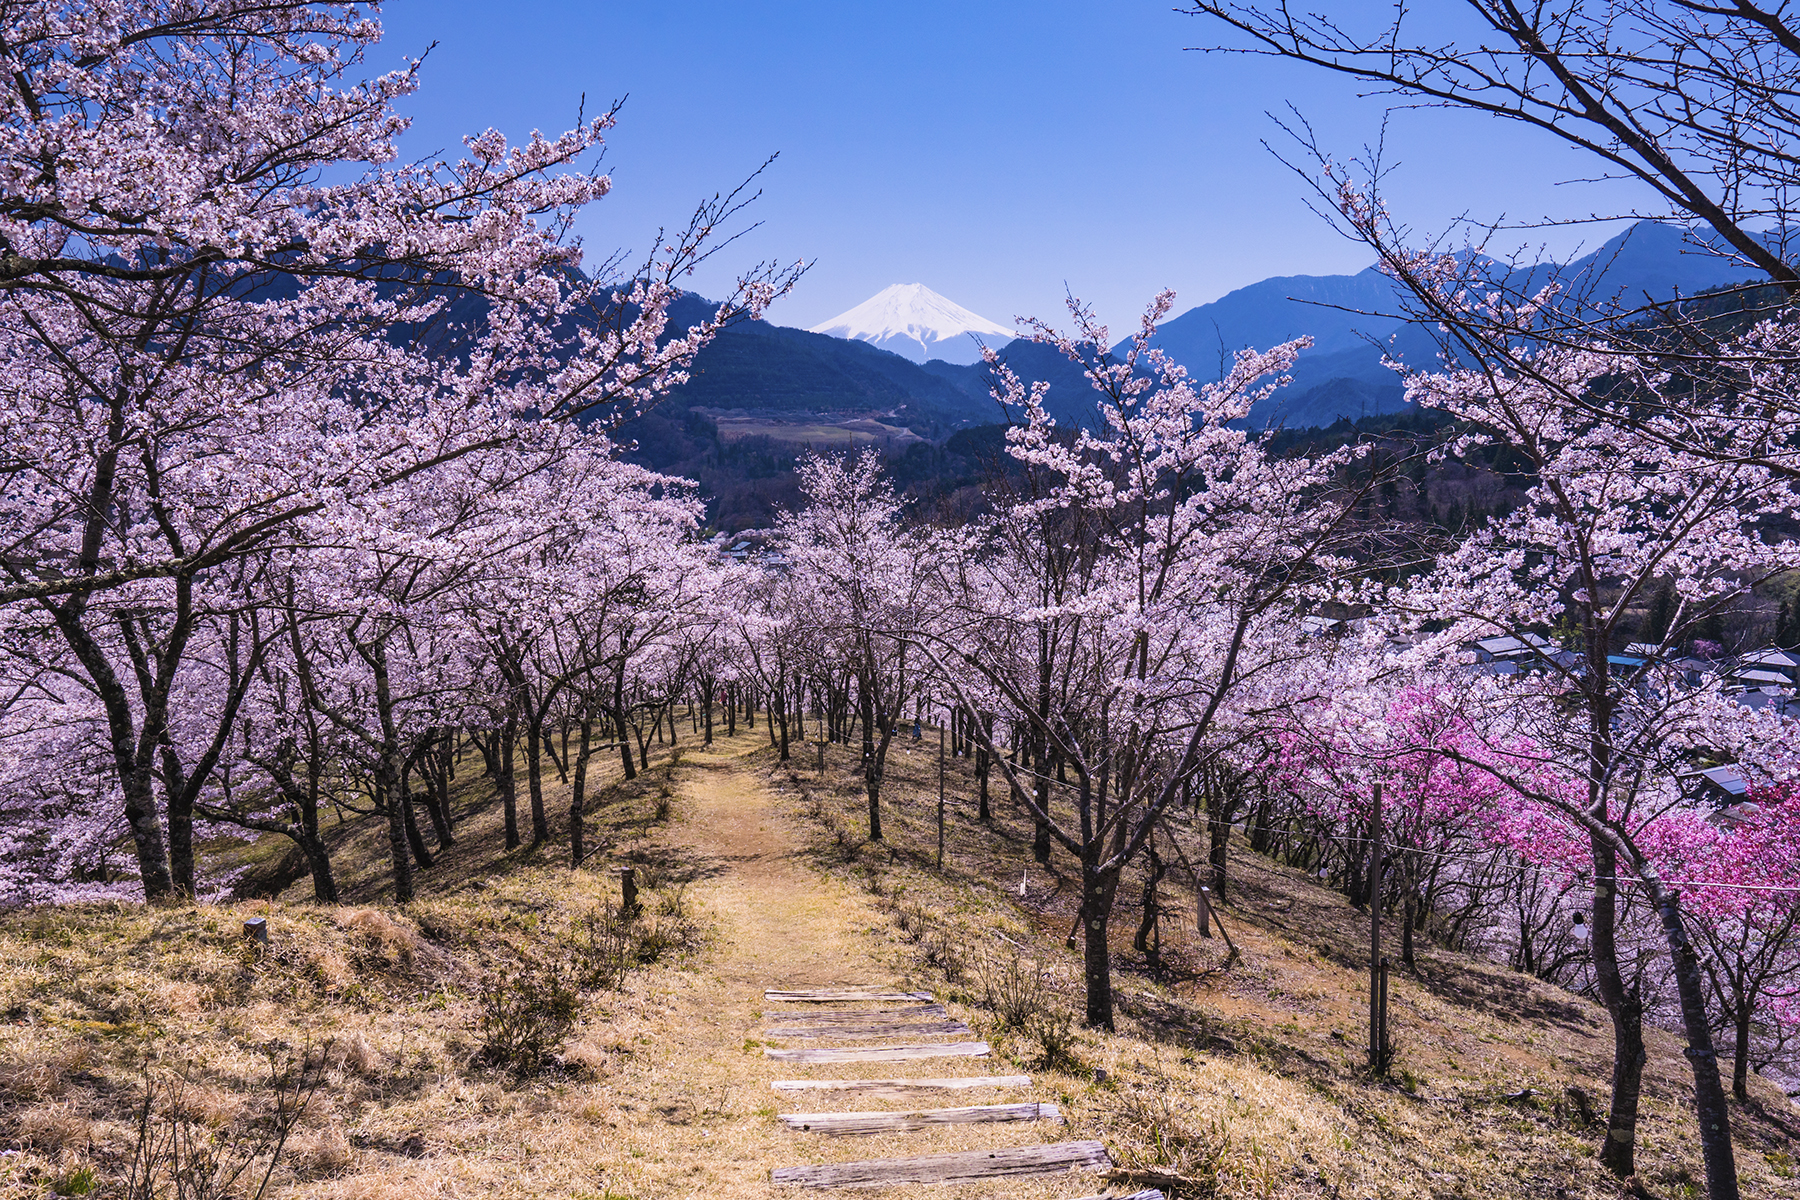 「秀麗富嶽十二景・お伊勢山」で望める桜並木